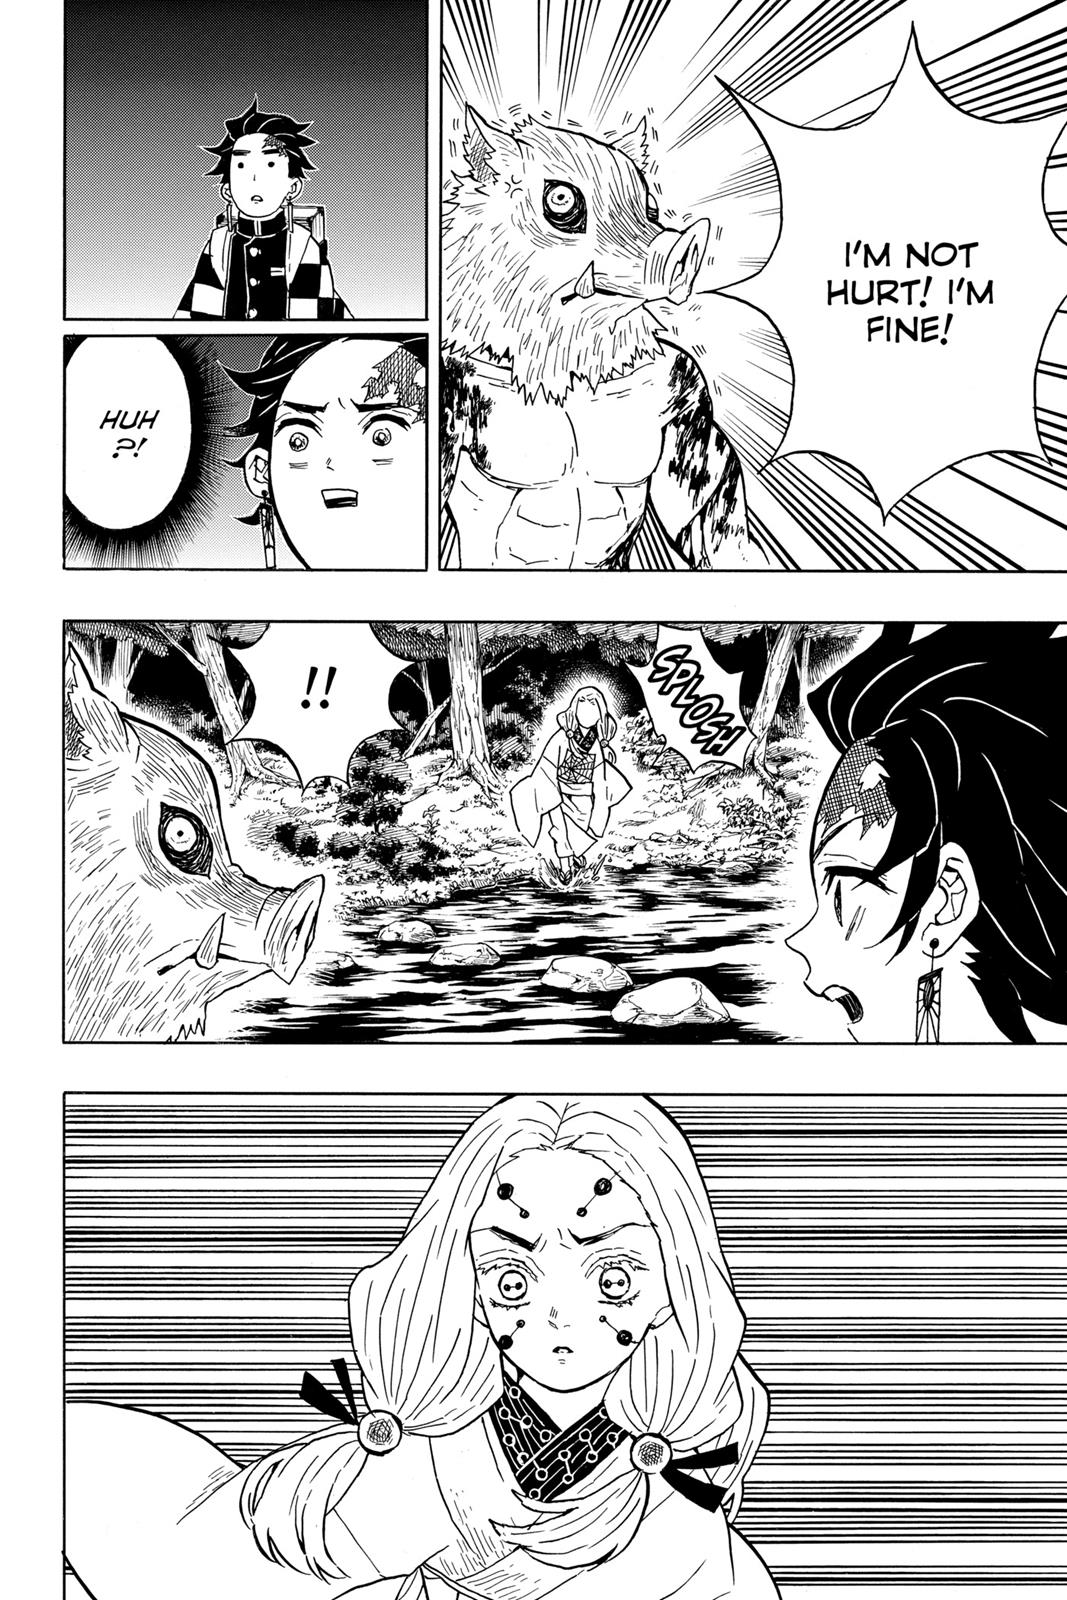 Demon Slayer Manga Manga Chapter - 34 - image 12